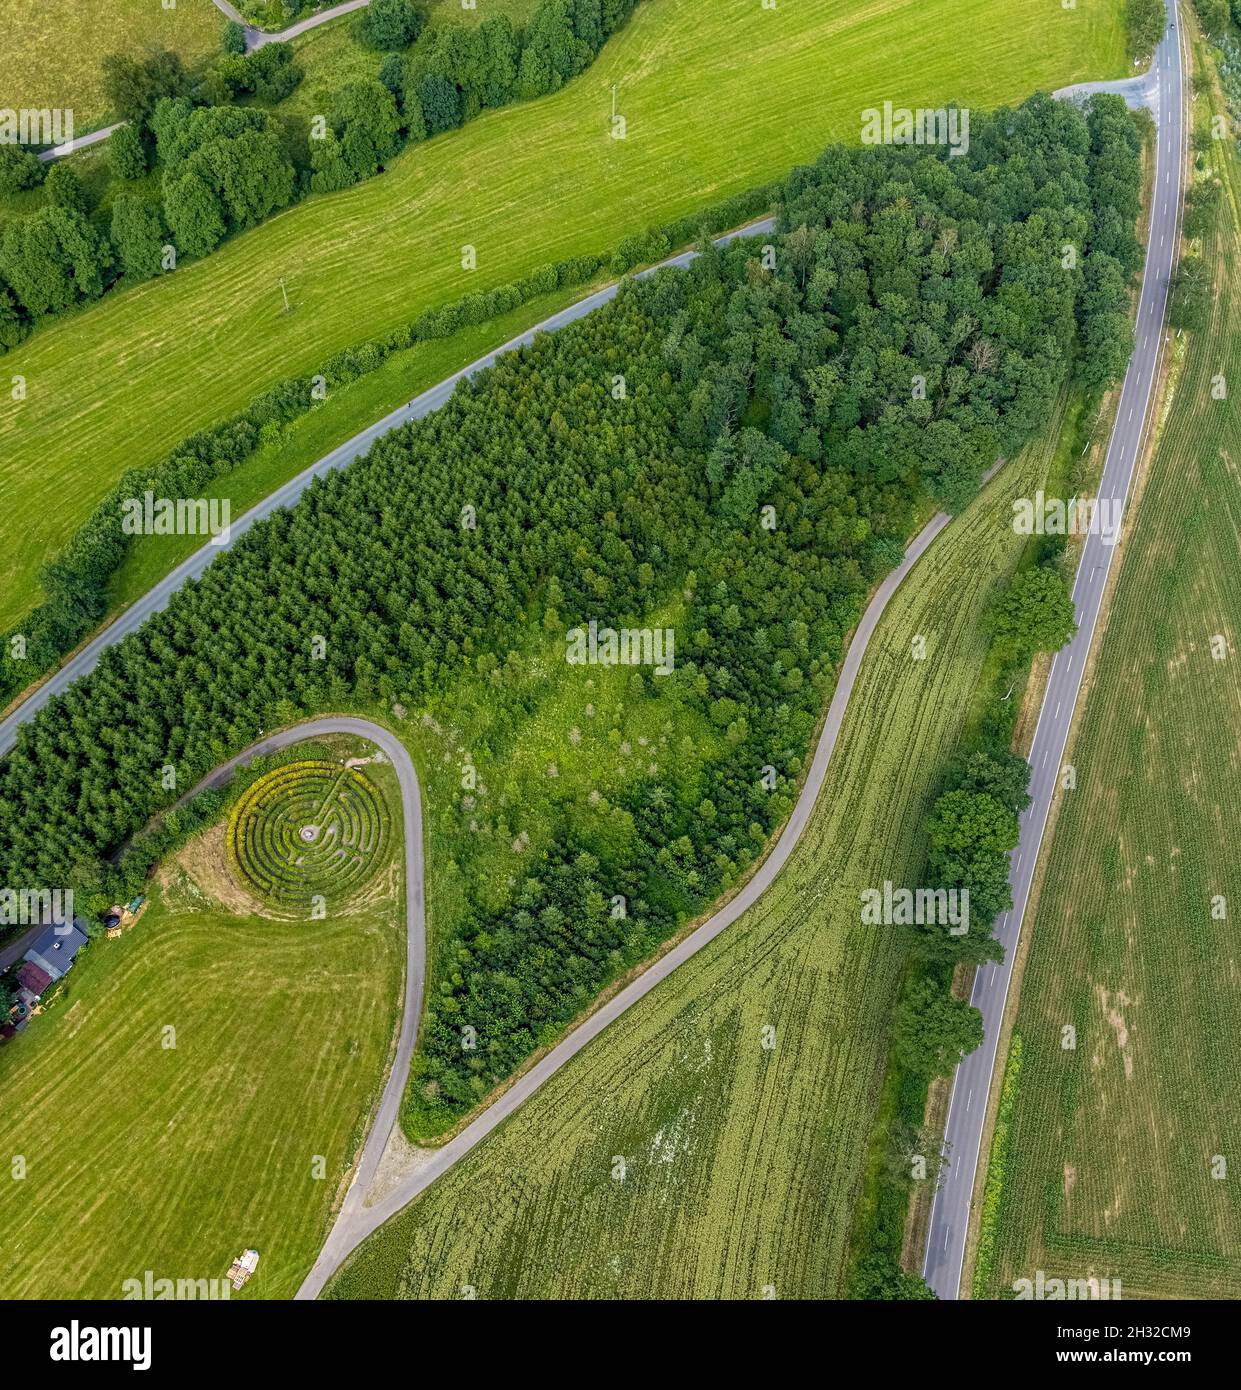 , Vista aérea, laberinto Drolshagen, cerca del pueblo Stupperhof, Drolshagen, Sauerland, Renania del Norte-Westfalia, Alemania, DE, Europa, laberinto de hedge, Foto de stock